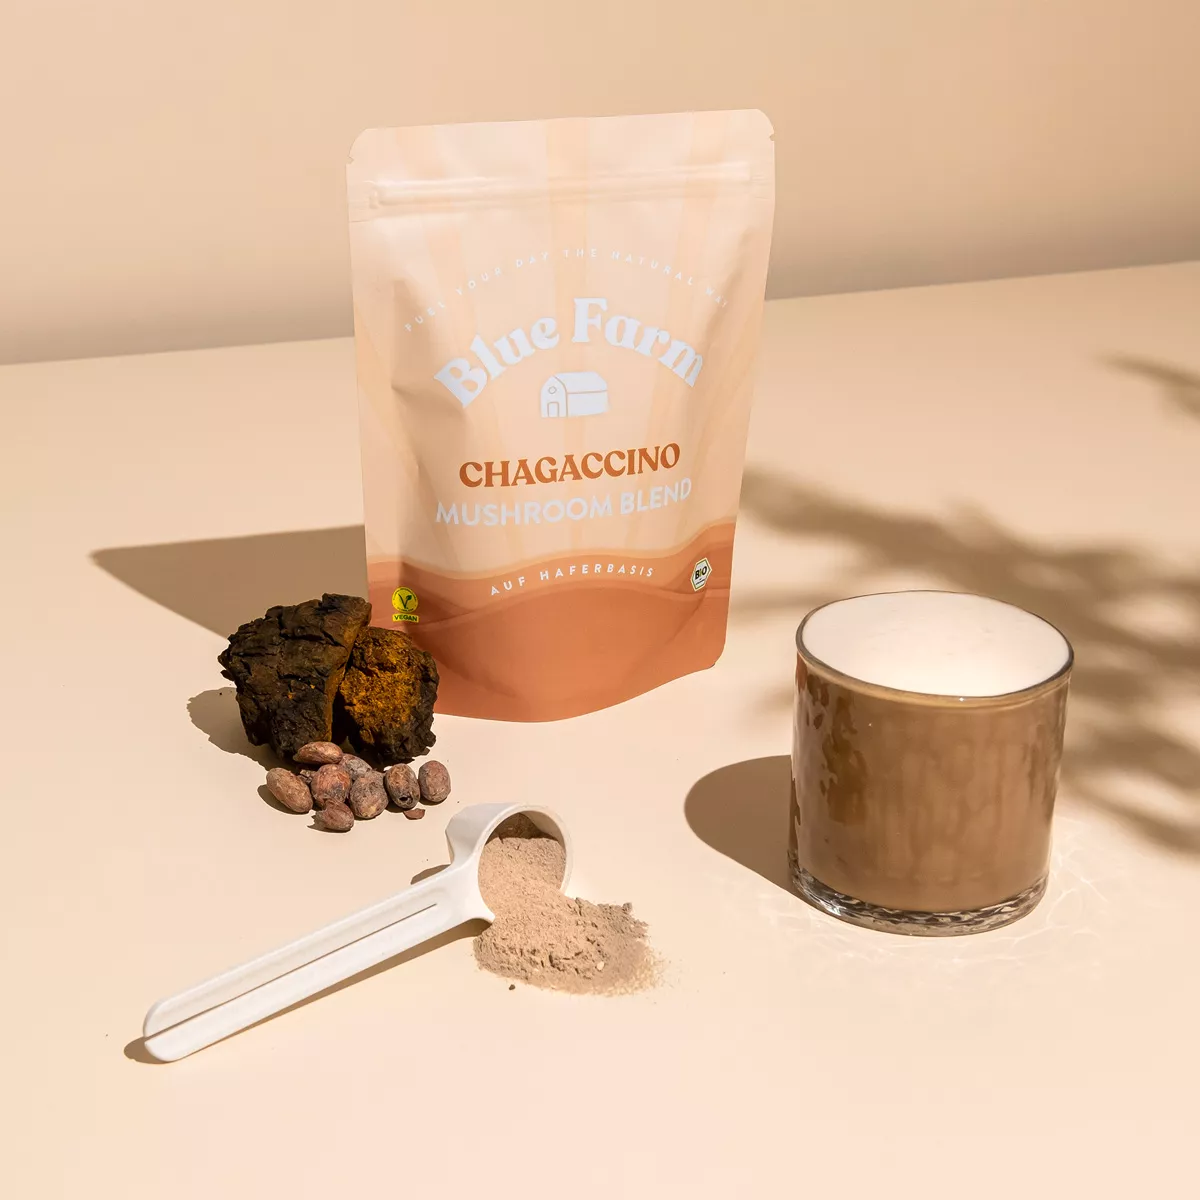 Ein Pulver mit Chagaccino steht auf einem Tisch, davor ein Glas mit angerührtem Chagaccino als Kaffee-Alternative.